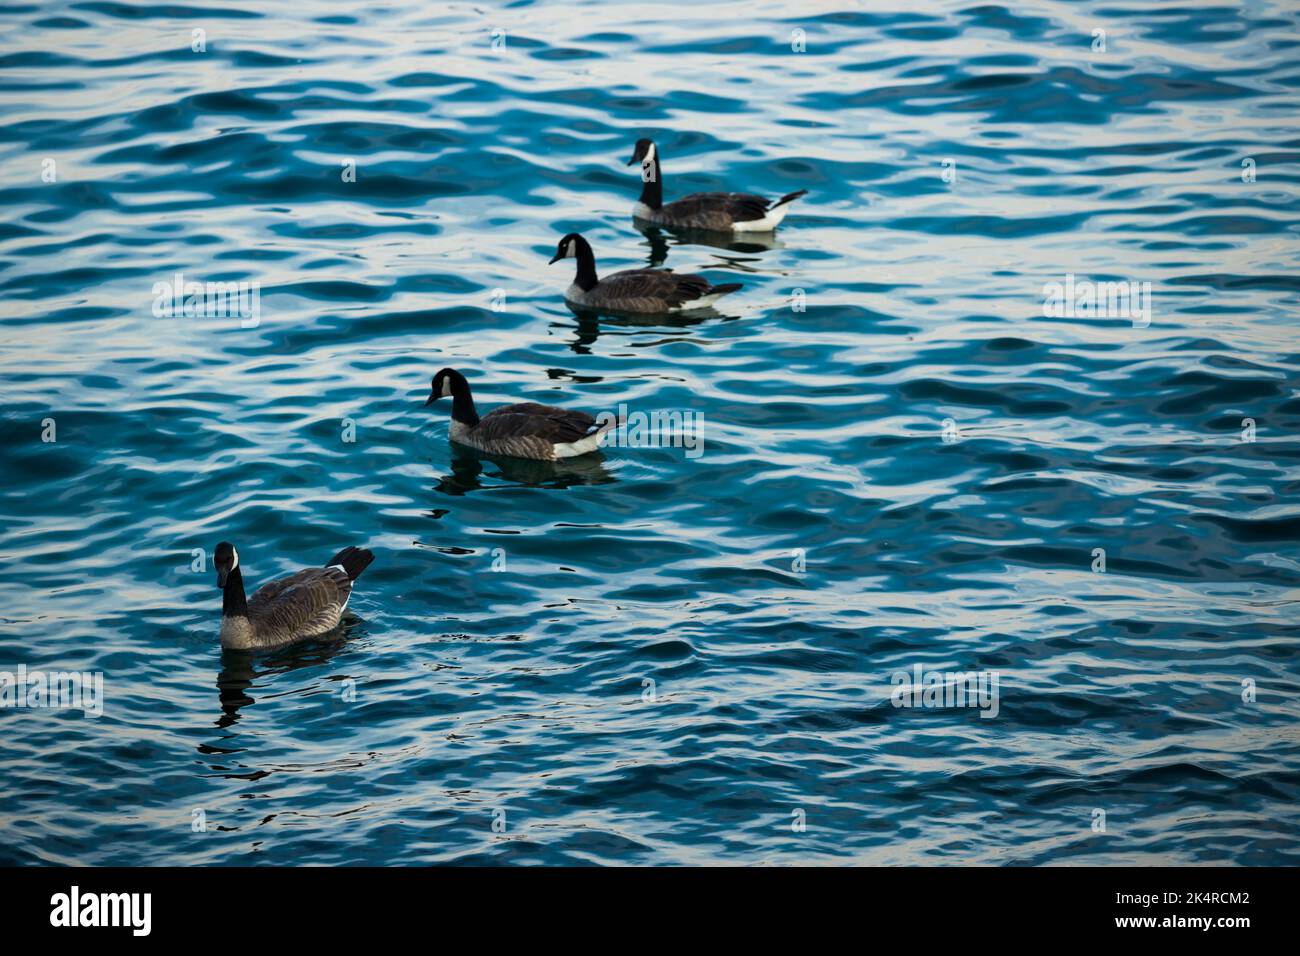 Gänse schwimmen auf blauem Wasser. Wildtiere - Kanadagans. Eine andere Zahl ist gut für die Zählung, Mathematik Stockfoto